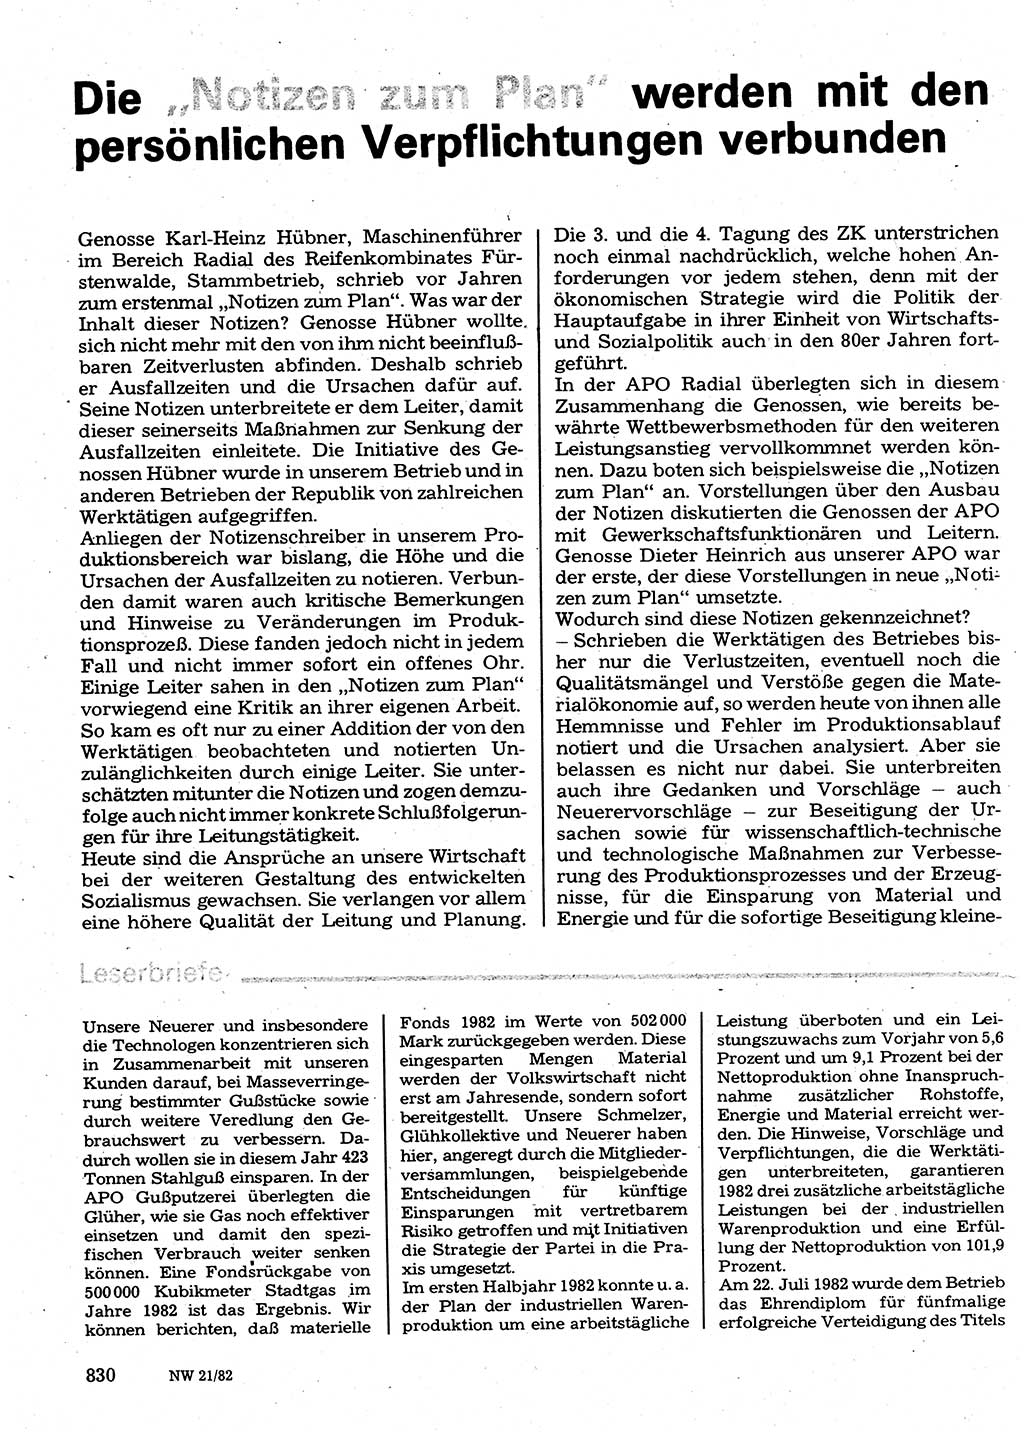 Neuer Weg (NW), Organ des Zentralkomitees (ZK) der SED (Sozialistische Einheitspartei Deutschlands) für Fragen des Parteilebens, 37. Jahrgang [Deutsche Demokratische Republik (DDR)] 1982, Seite 830 (NW ZK SED DDR 1982, S. 830)